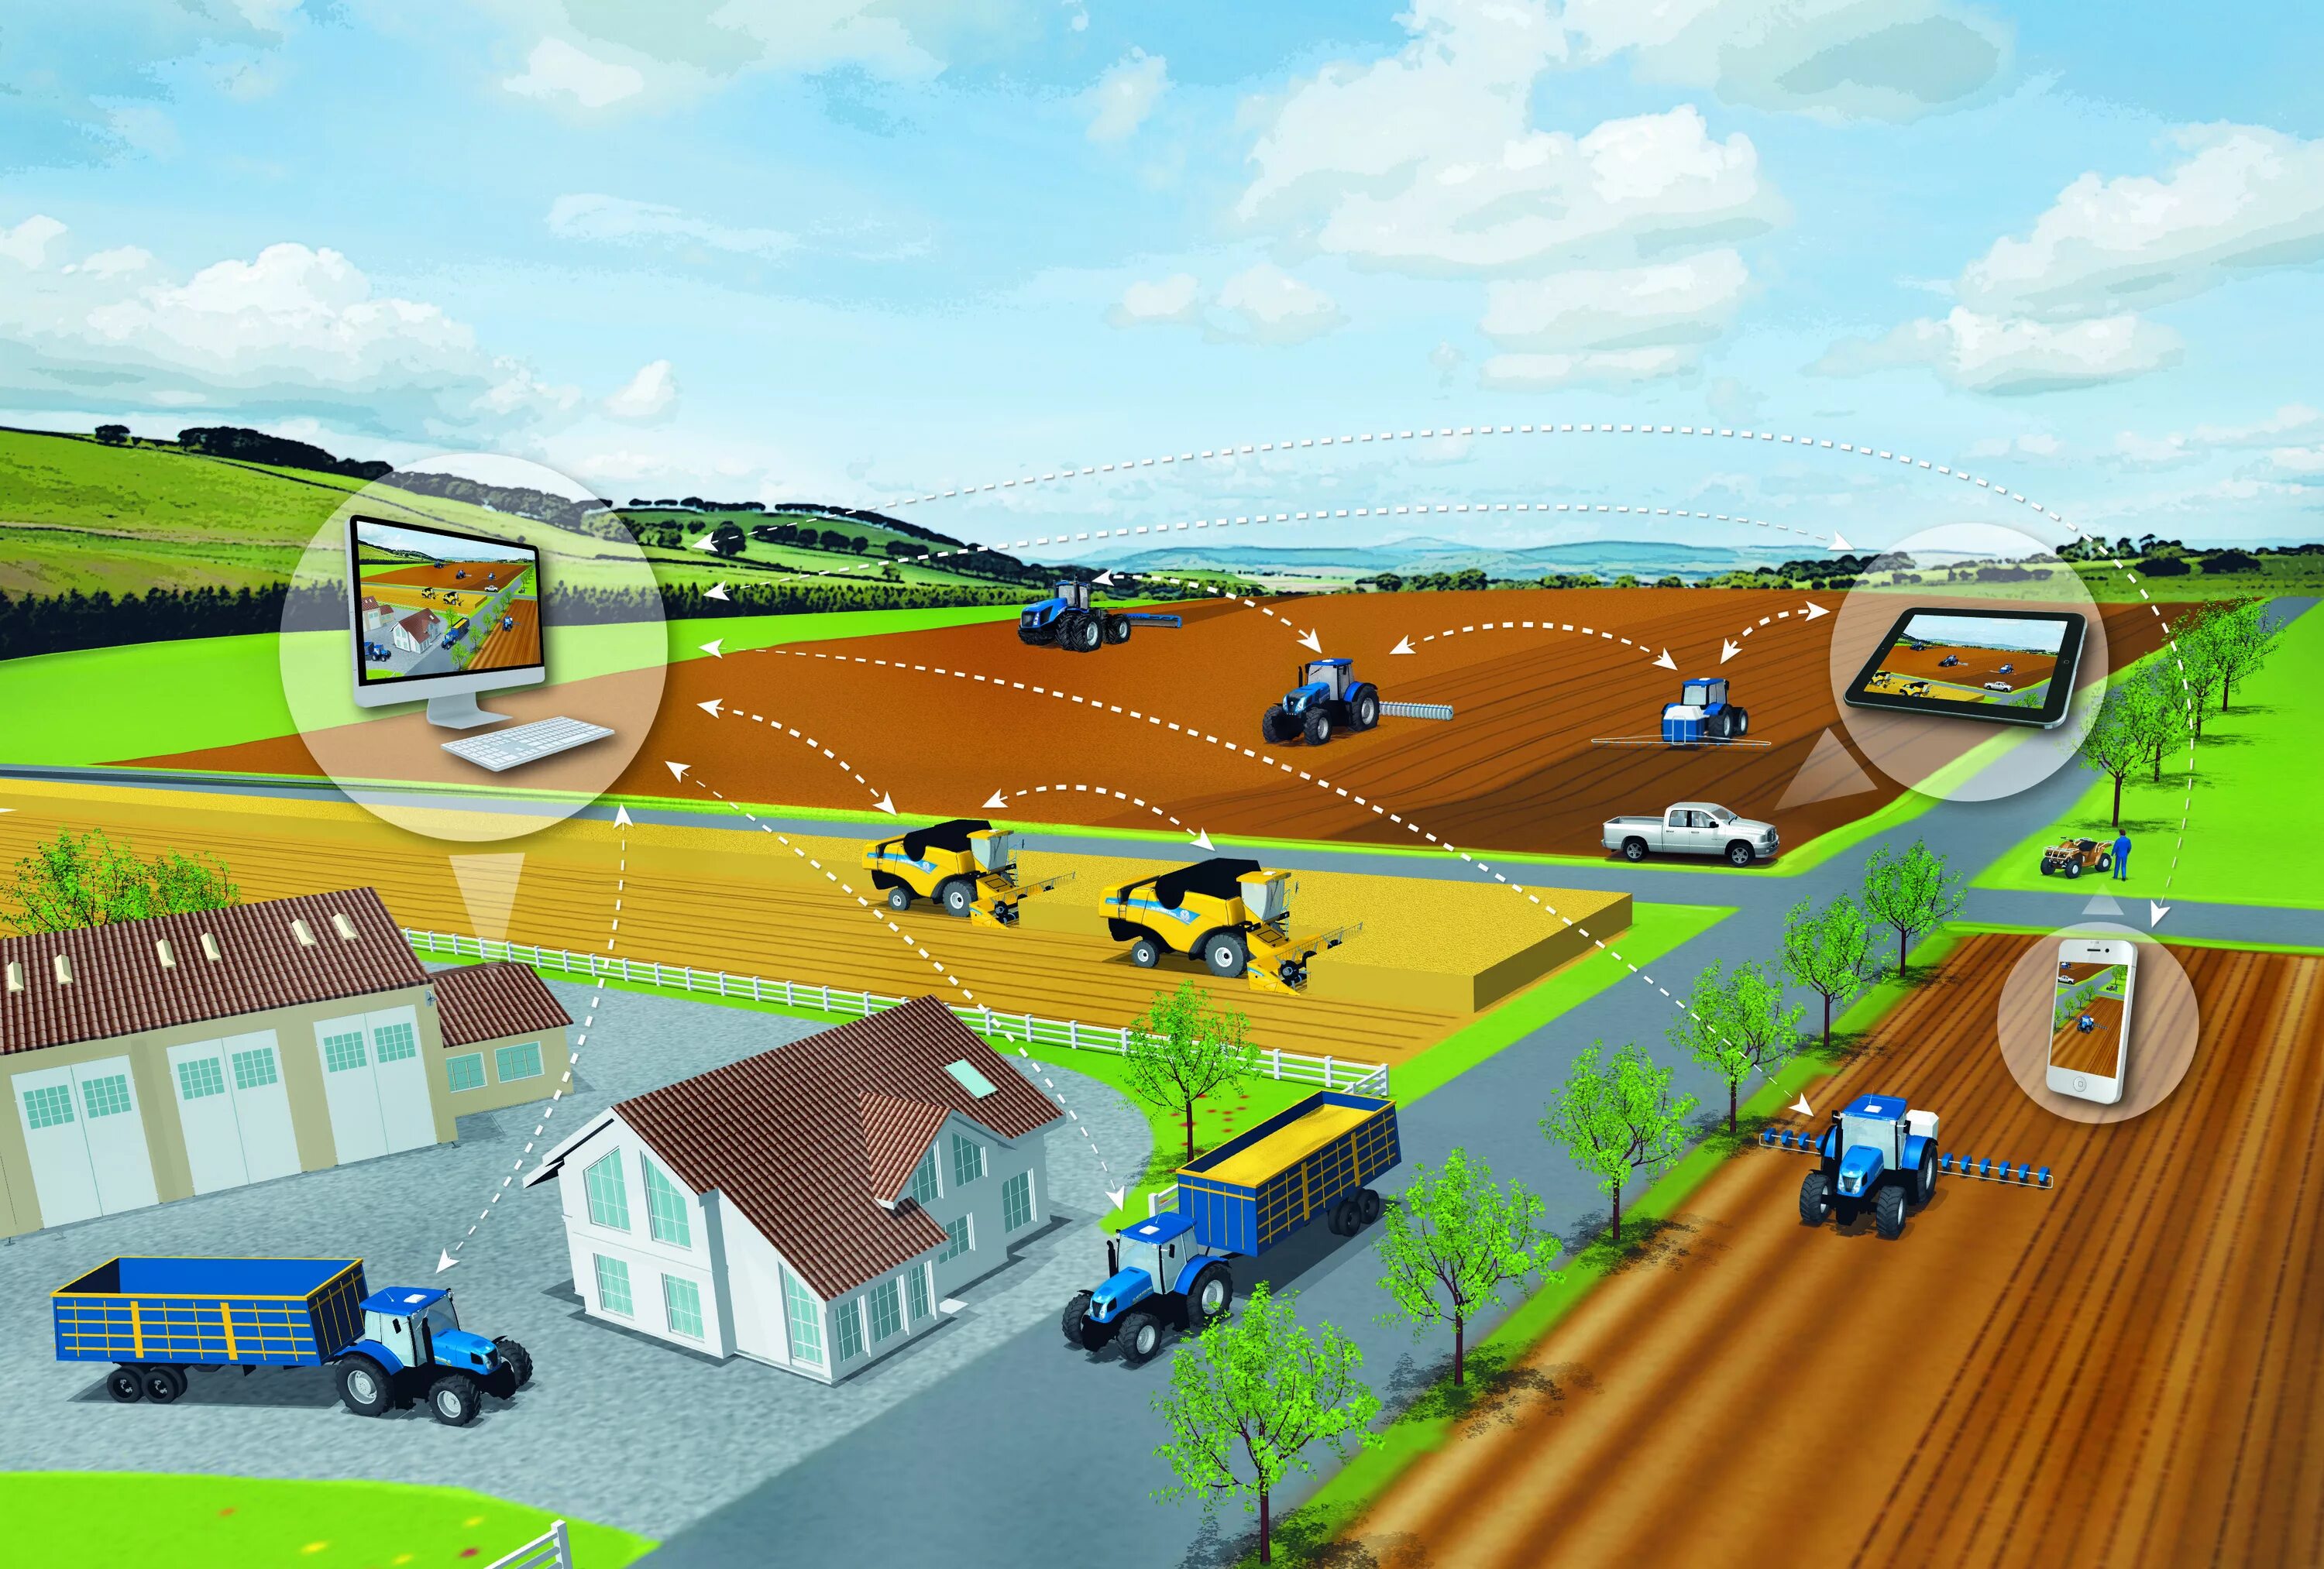 Техническая база транспорта. Цифровые технологии в сельском хозяйстве. Инфраструктура сельского хозяйства. GPS навигация в сельском хозяйстве. Инновационные технологии в агропромышленном комплексе.